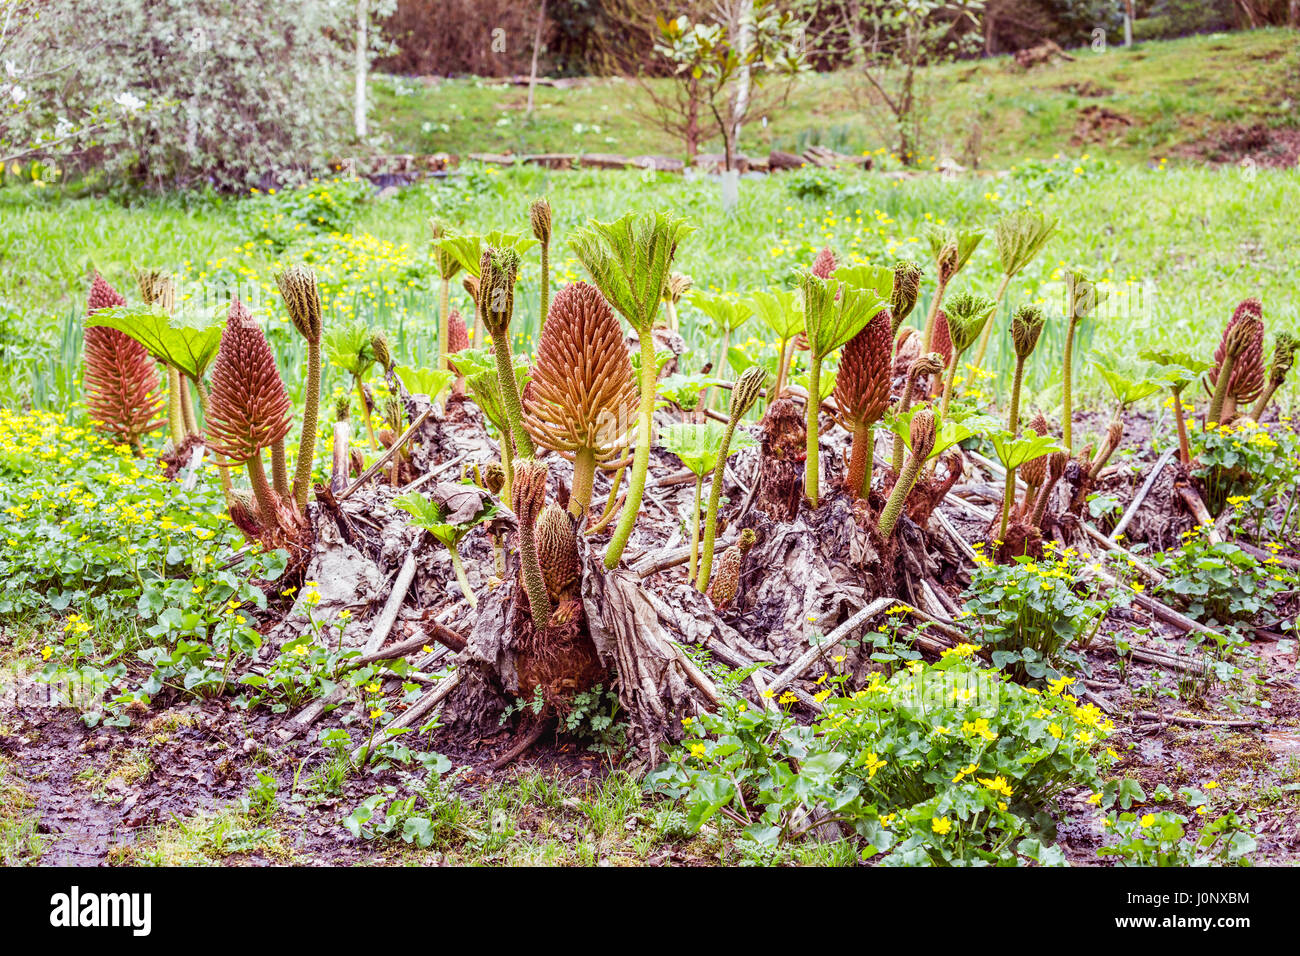 Germogli di primavera e foglie, fiori spike, spinoso piccioli di bog impianto Gunnera, rabarbaro gigante, in primavera, Ramster giardino, Chiddingfold, Surrey, Regno Unito Foto Stock